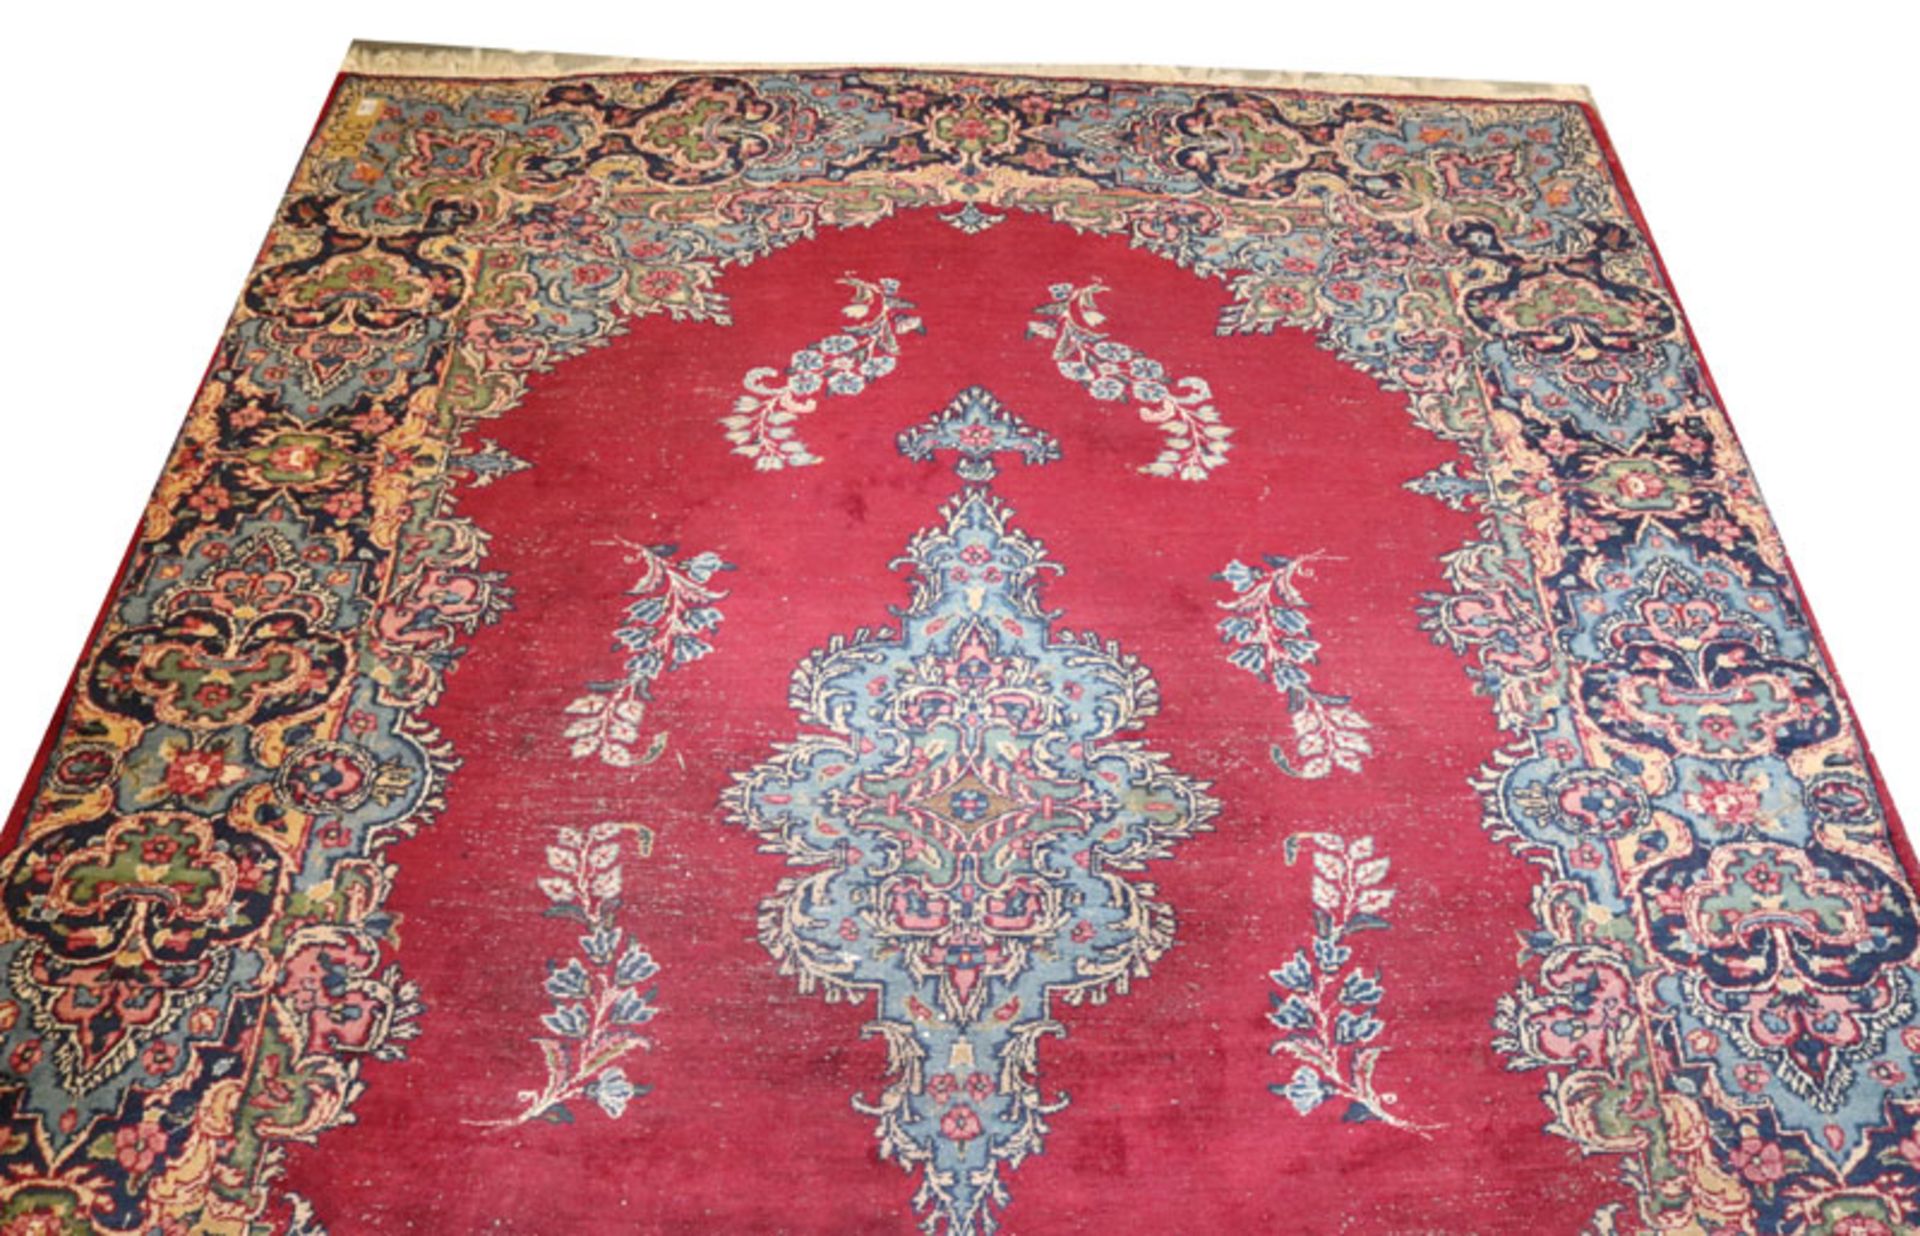 Teppich, Kirman, rot/blau/bunt, starke Gebrauchsspuren, beschädigt, 286 cm x 200 cm